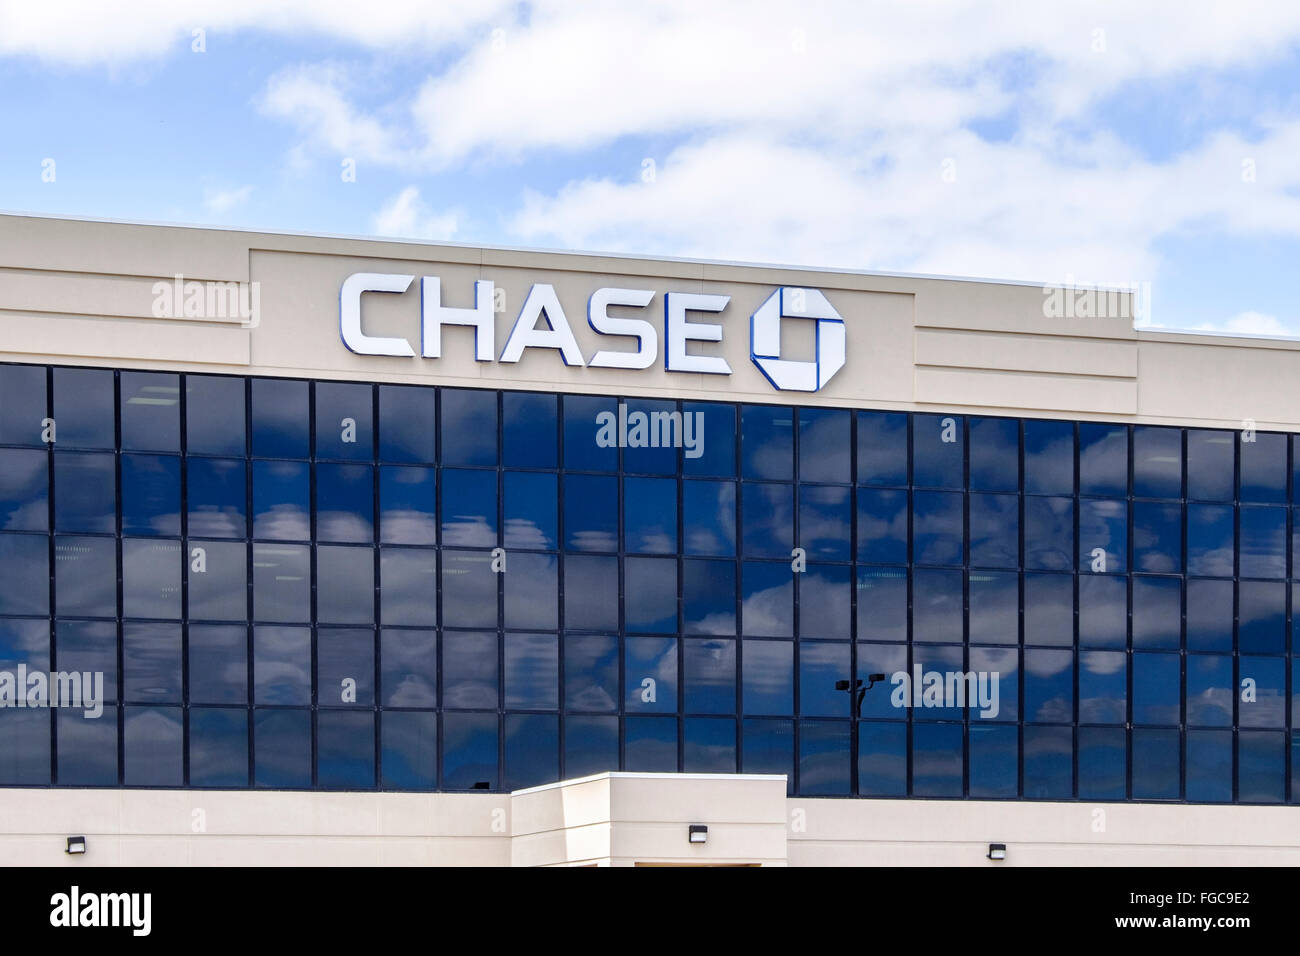 Chase Bank exterior, located in Oklahoma City, Oklahoma, USA. Stock Photo